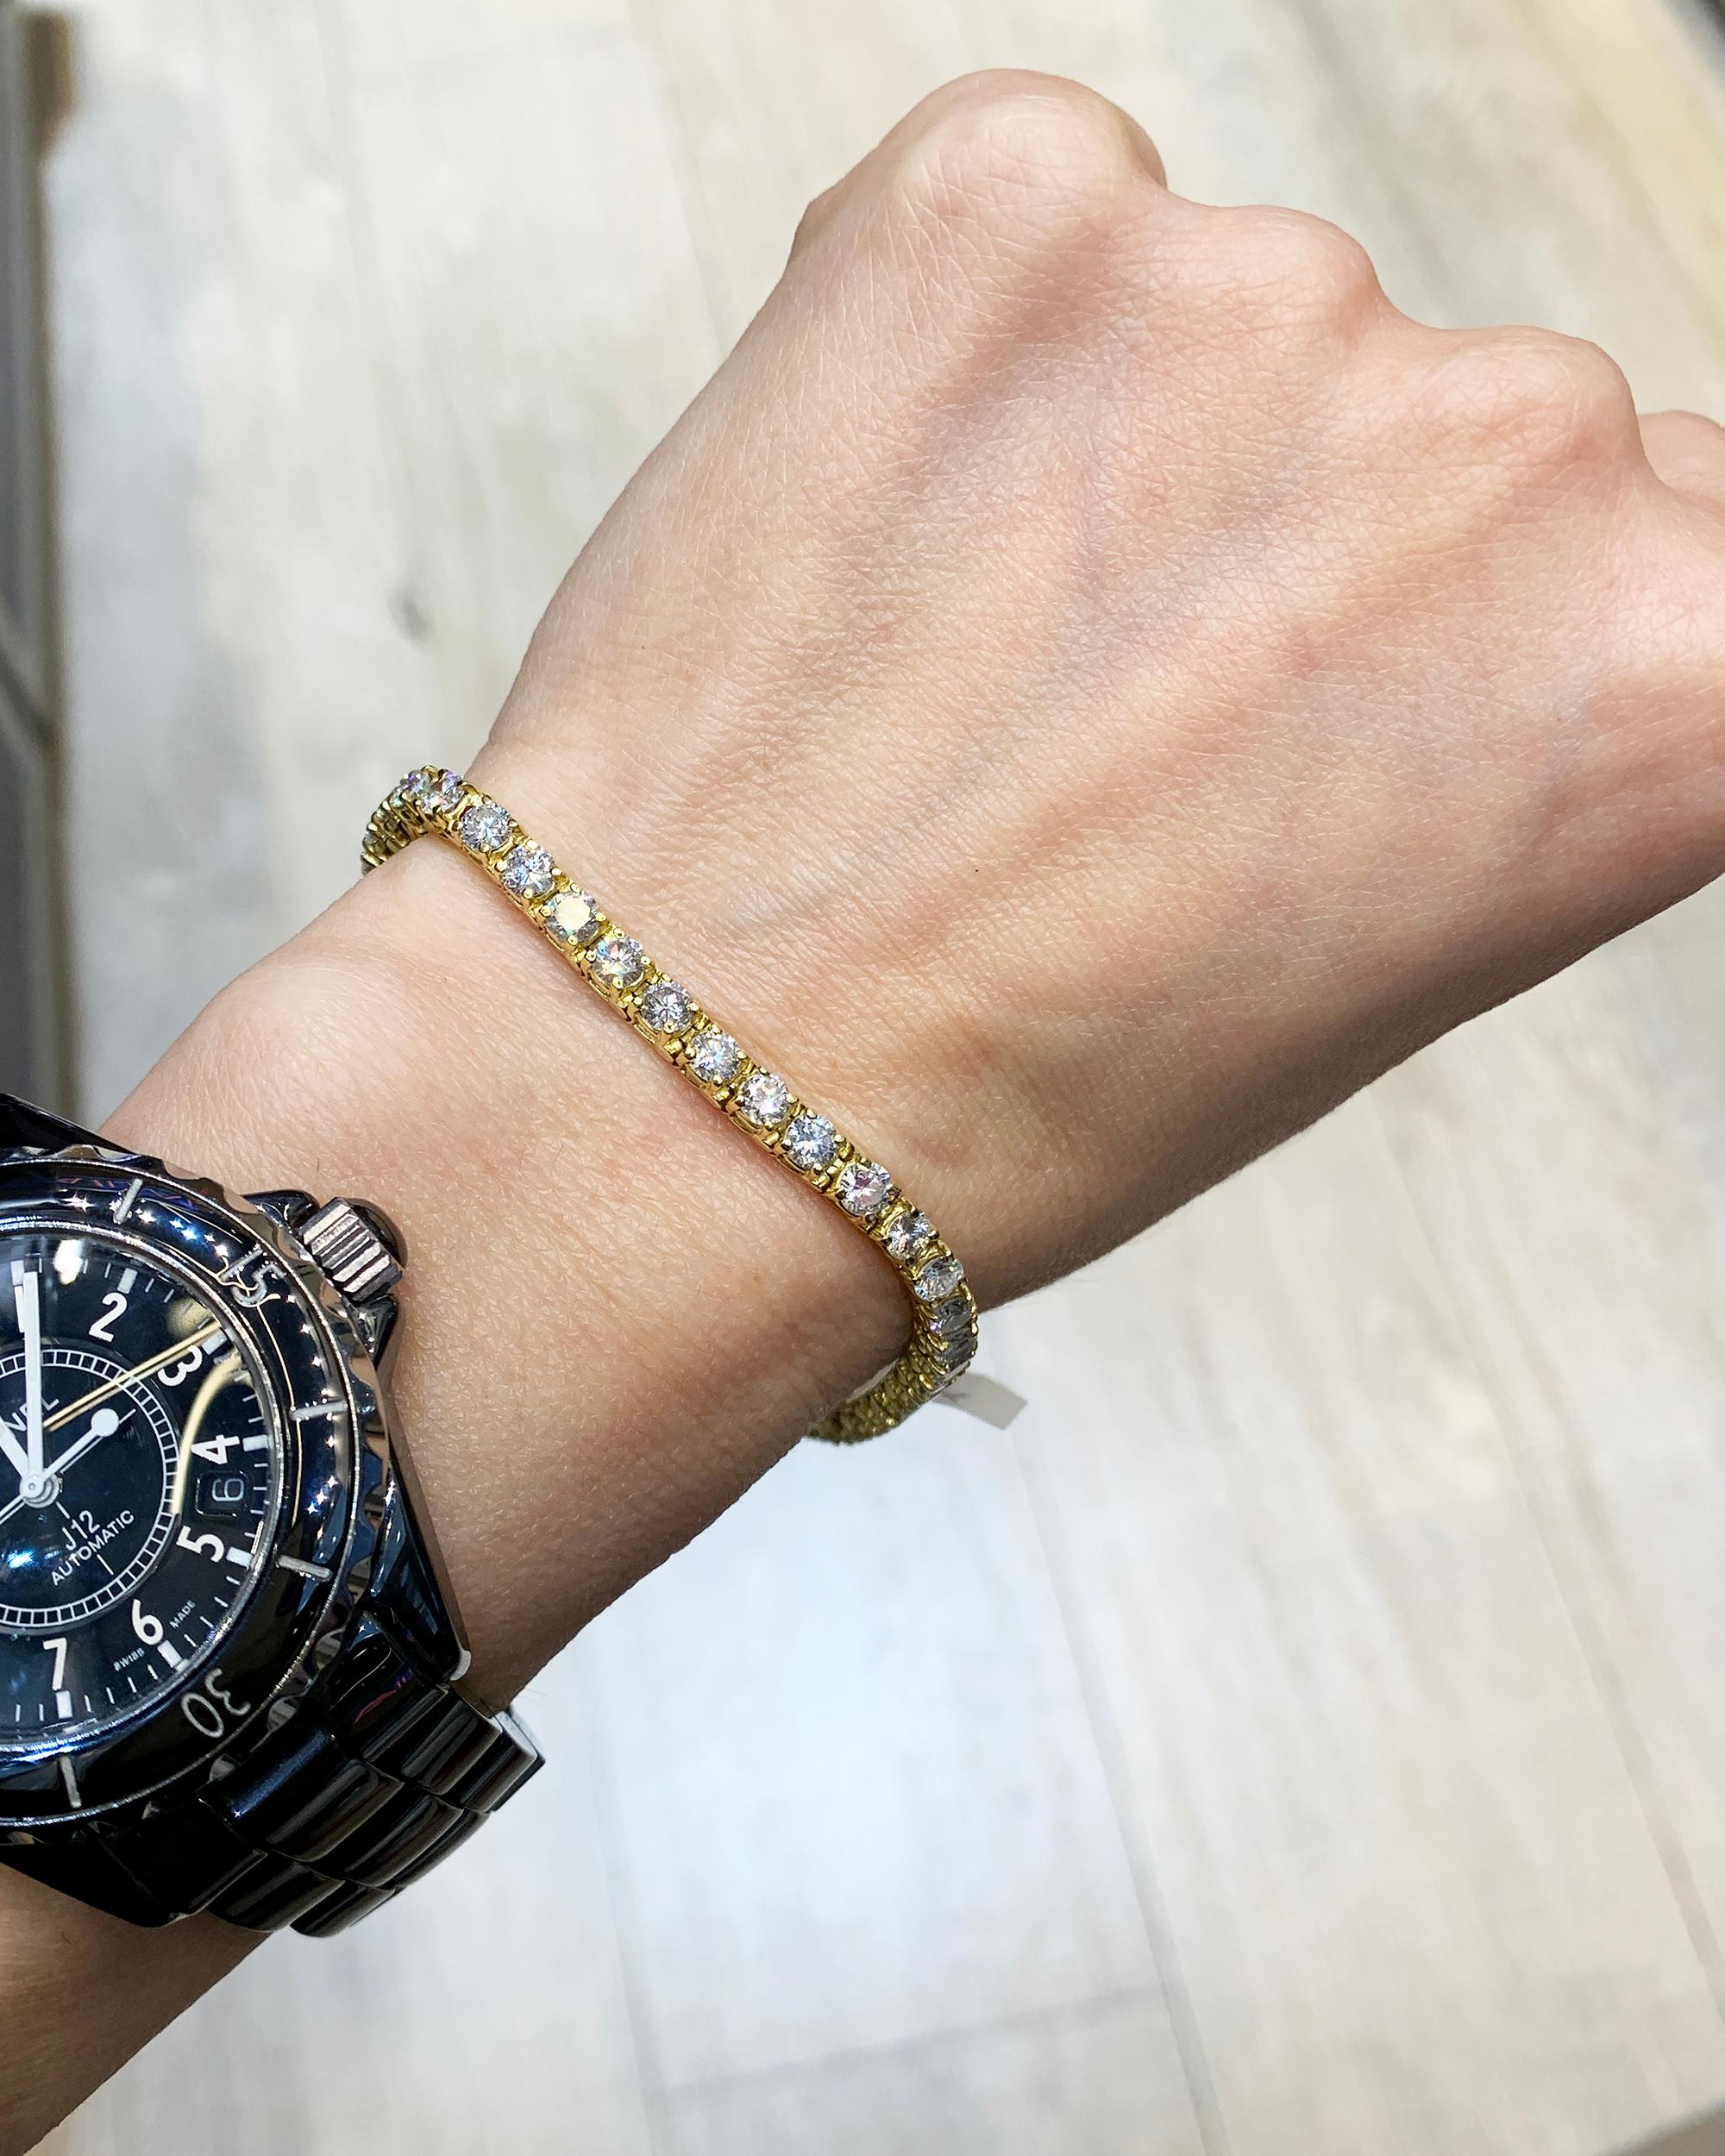 Un beau bracelet tennis classique décoré de 44 diamants ronds et serti en or jaune 18 carats.
Le poids total des diamants est de 6,60 carats, soit environ 0,15 carat chacun.
Les diamants ne sont pas certifiés et sont équivalents à des couleurs G-H,